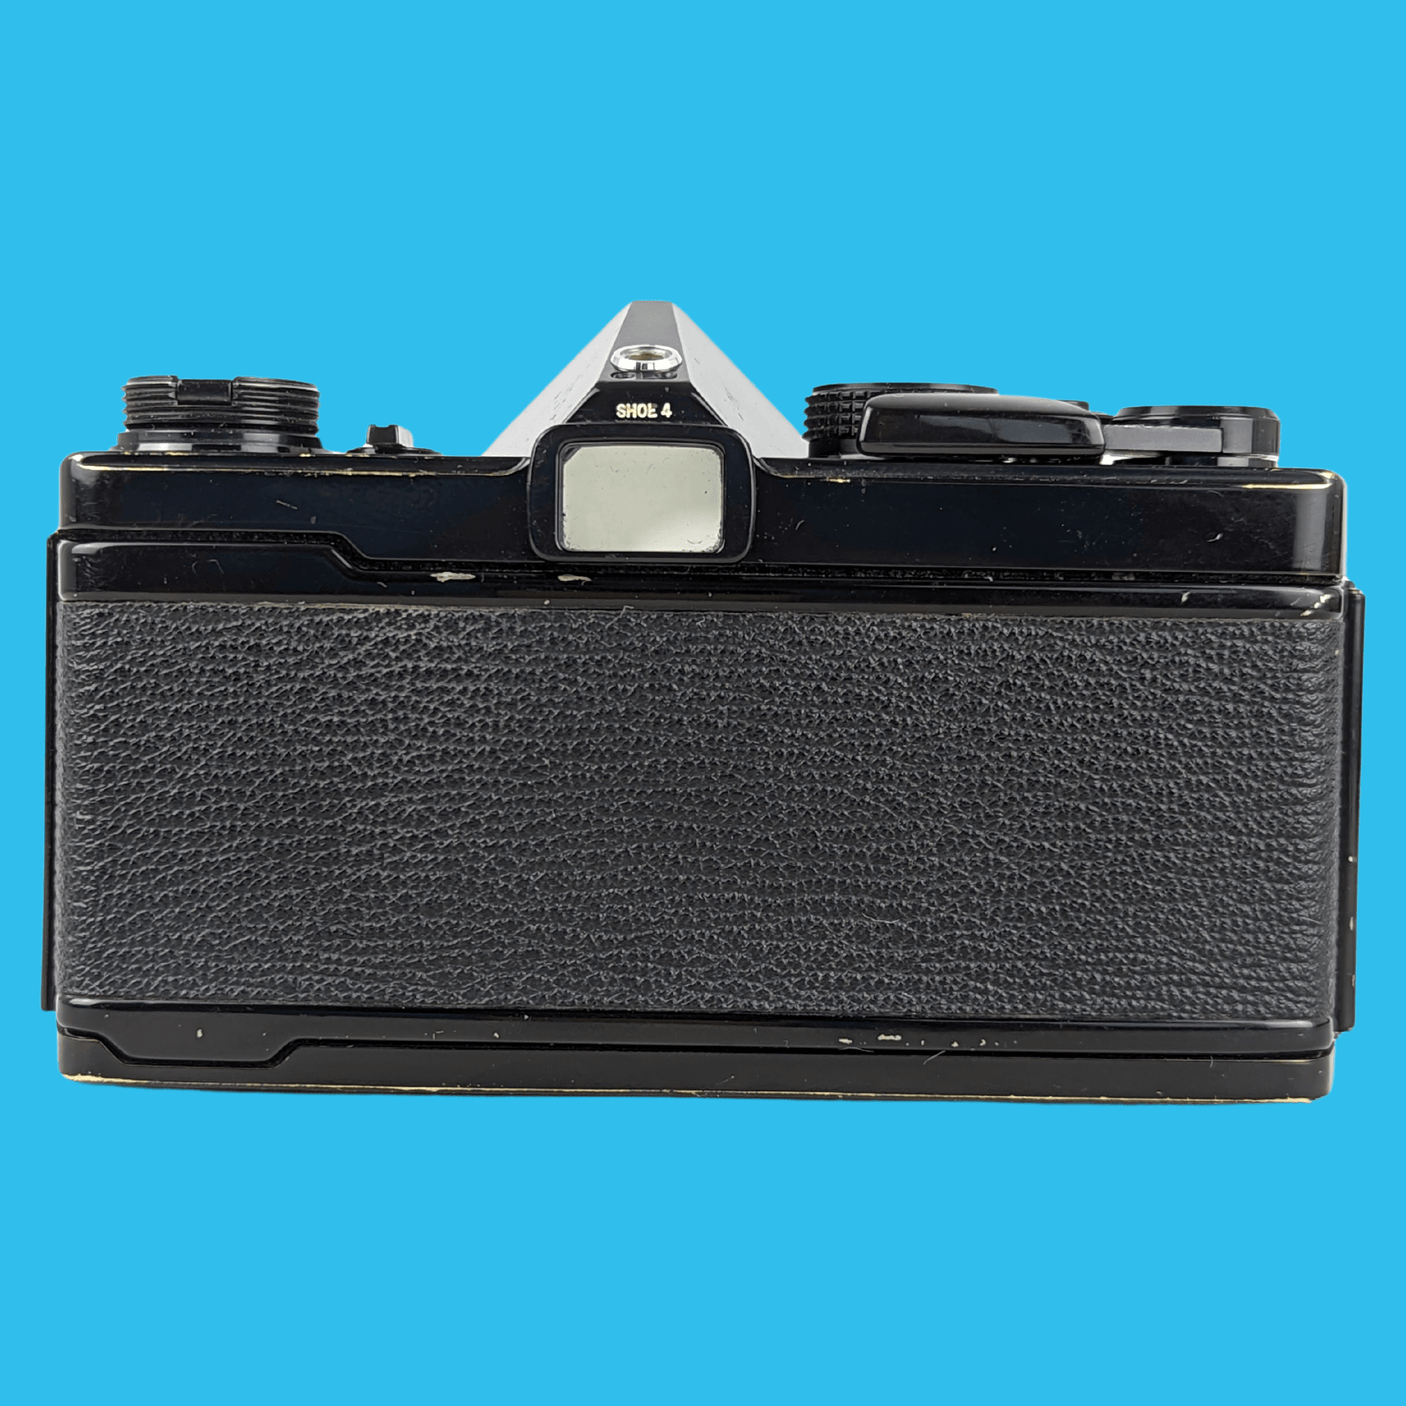 オリンパス OM 1 ブラック 35mm SLR フィルム カメラ、f/1.8 50mm 